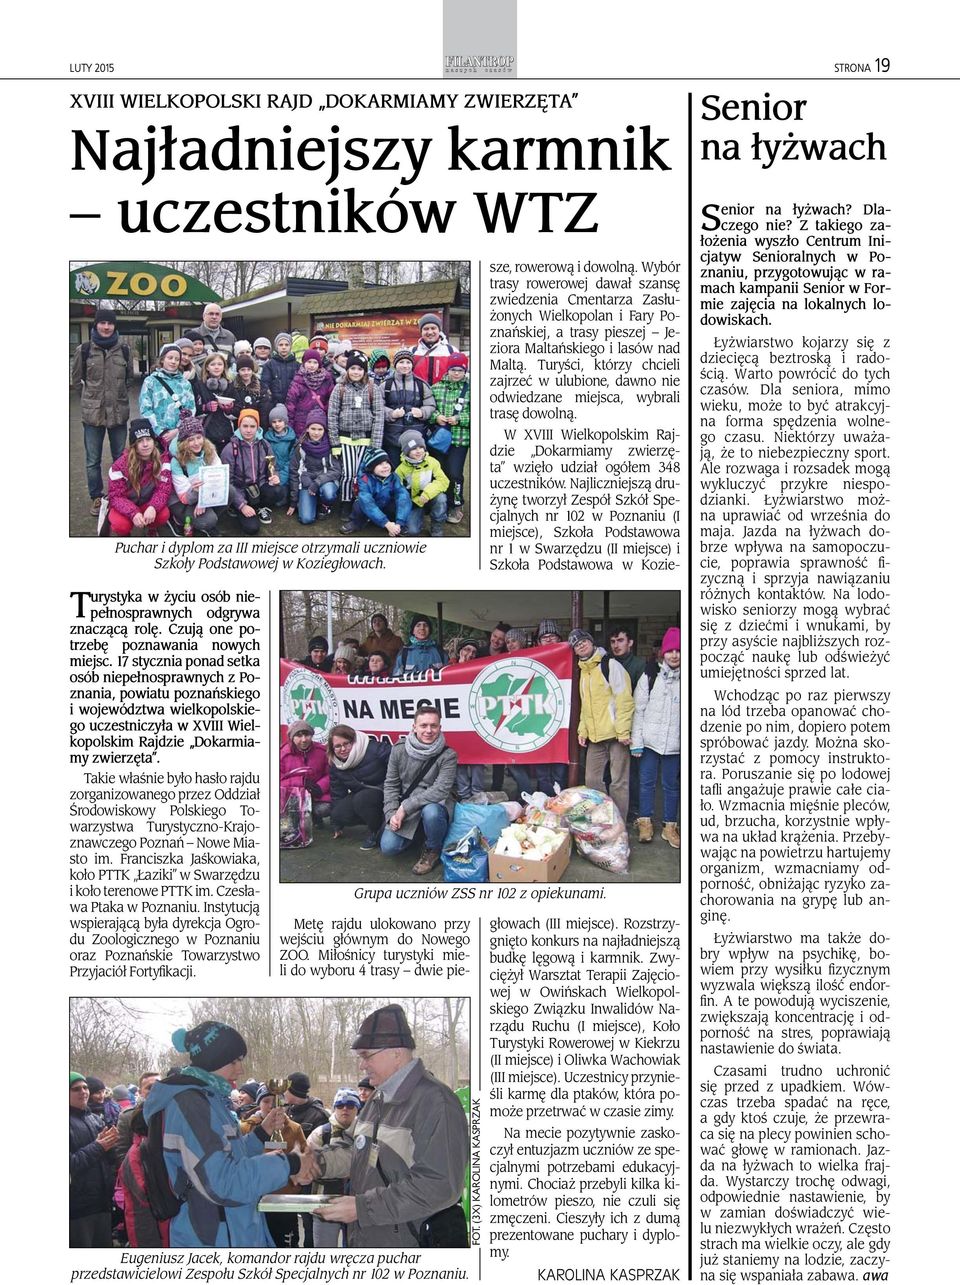 17 stycznia ponad setka osób niepełnosprawnych z Poznania, powiatu poznańskiego i województwa wielkopolskiego uczestniczyła w XVIII Wielkopolskim Rajdzie Dokarmiamy zwierzęta.